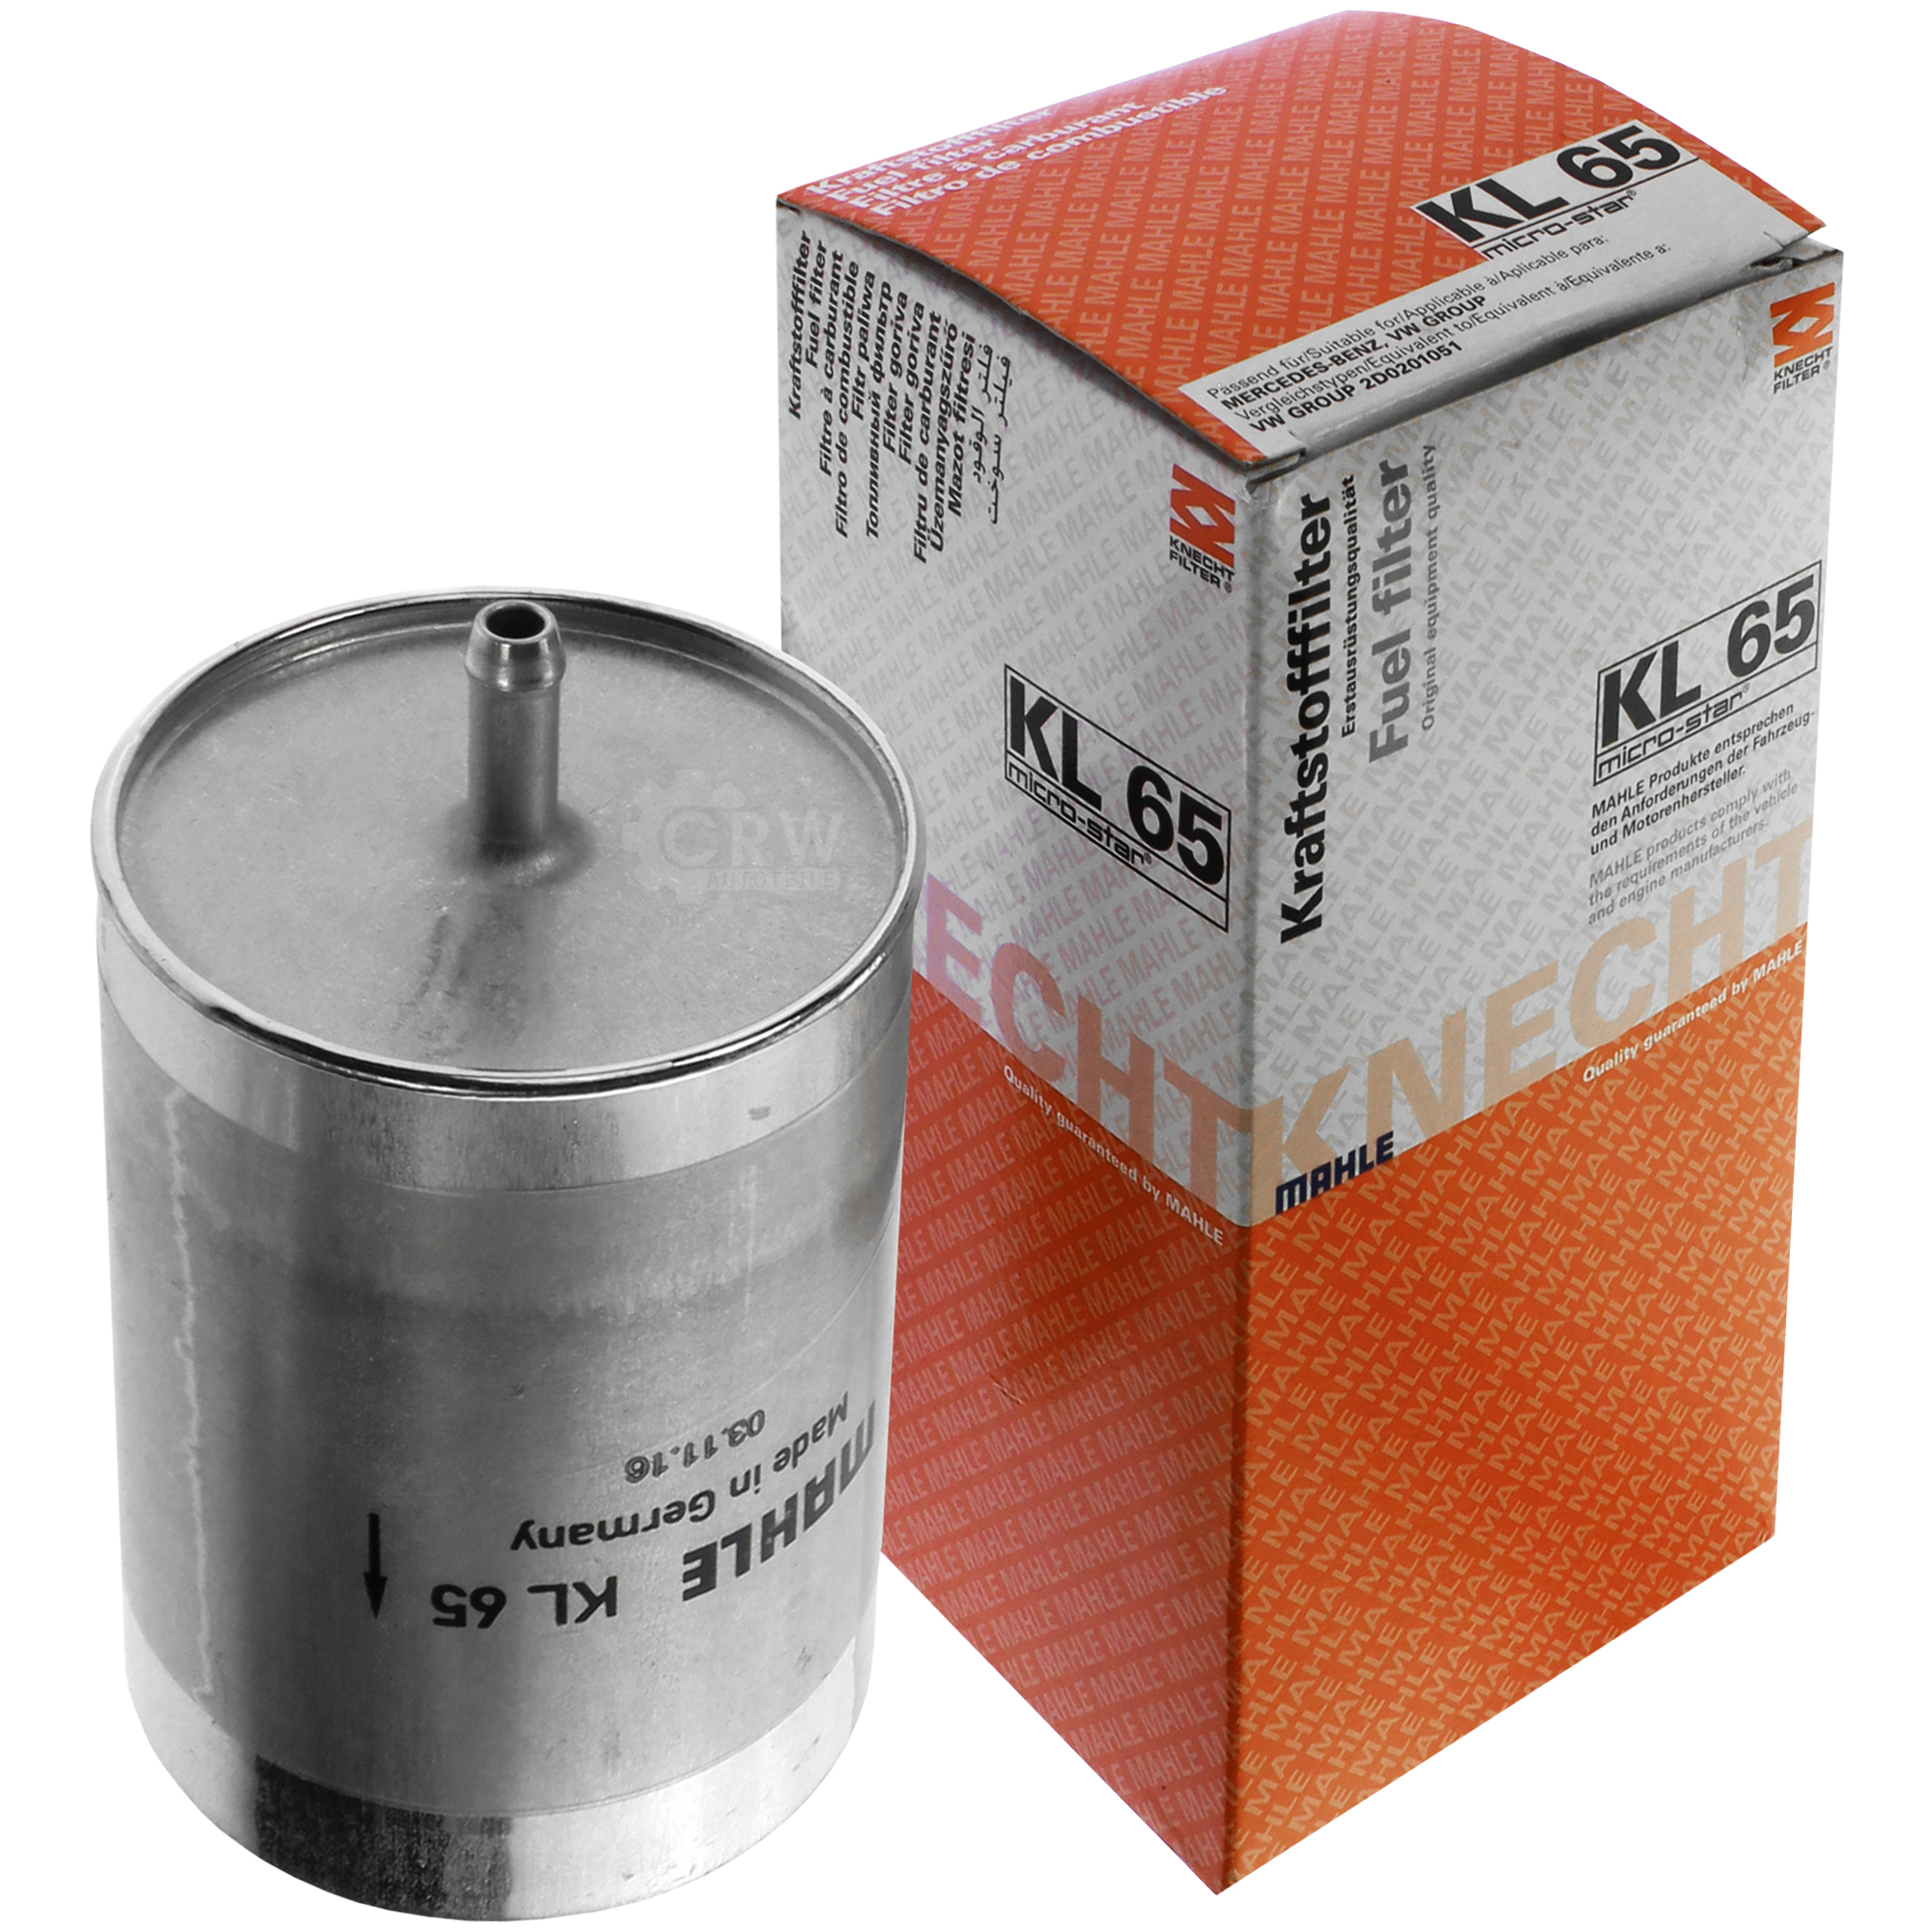 MAHLE Kraftstofffilter KL 65 Fuel Filter